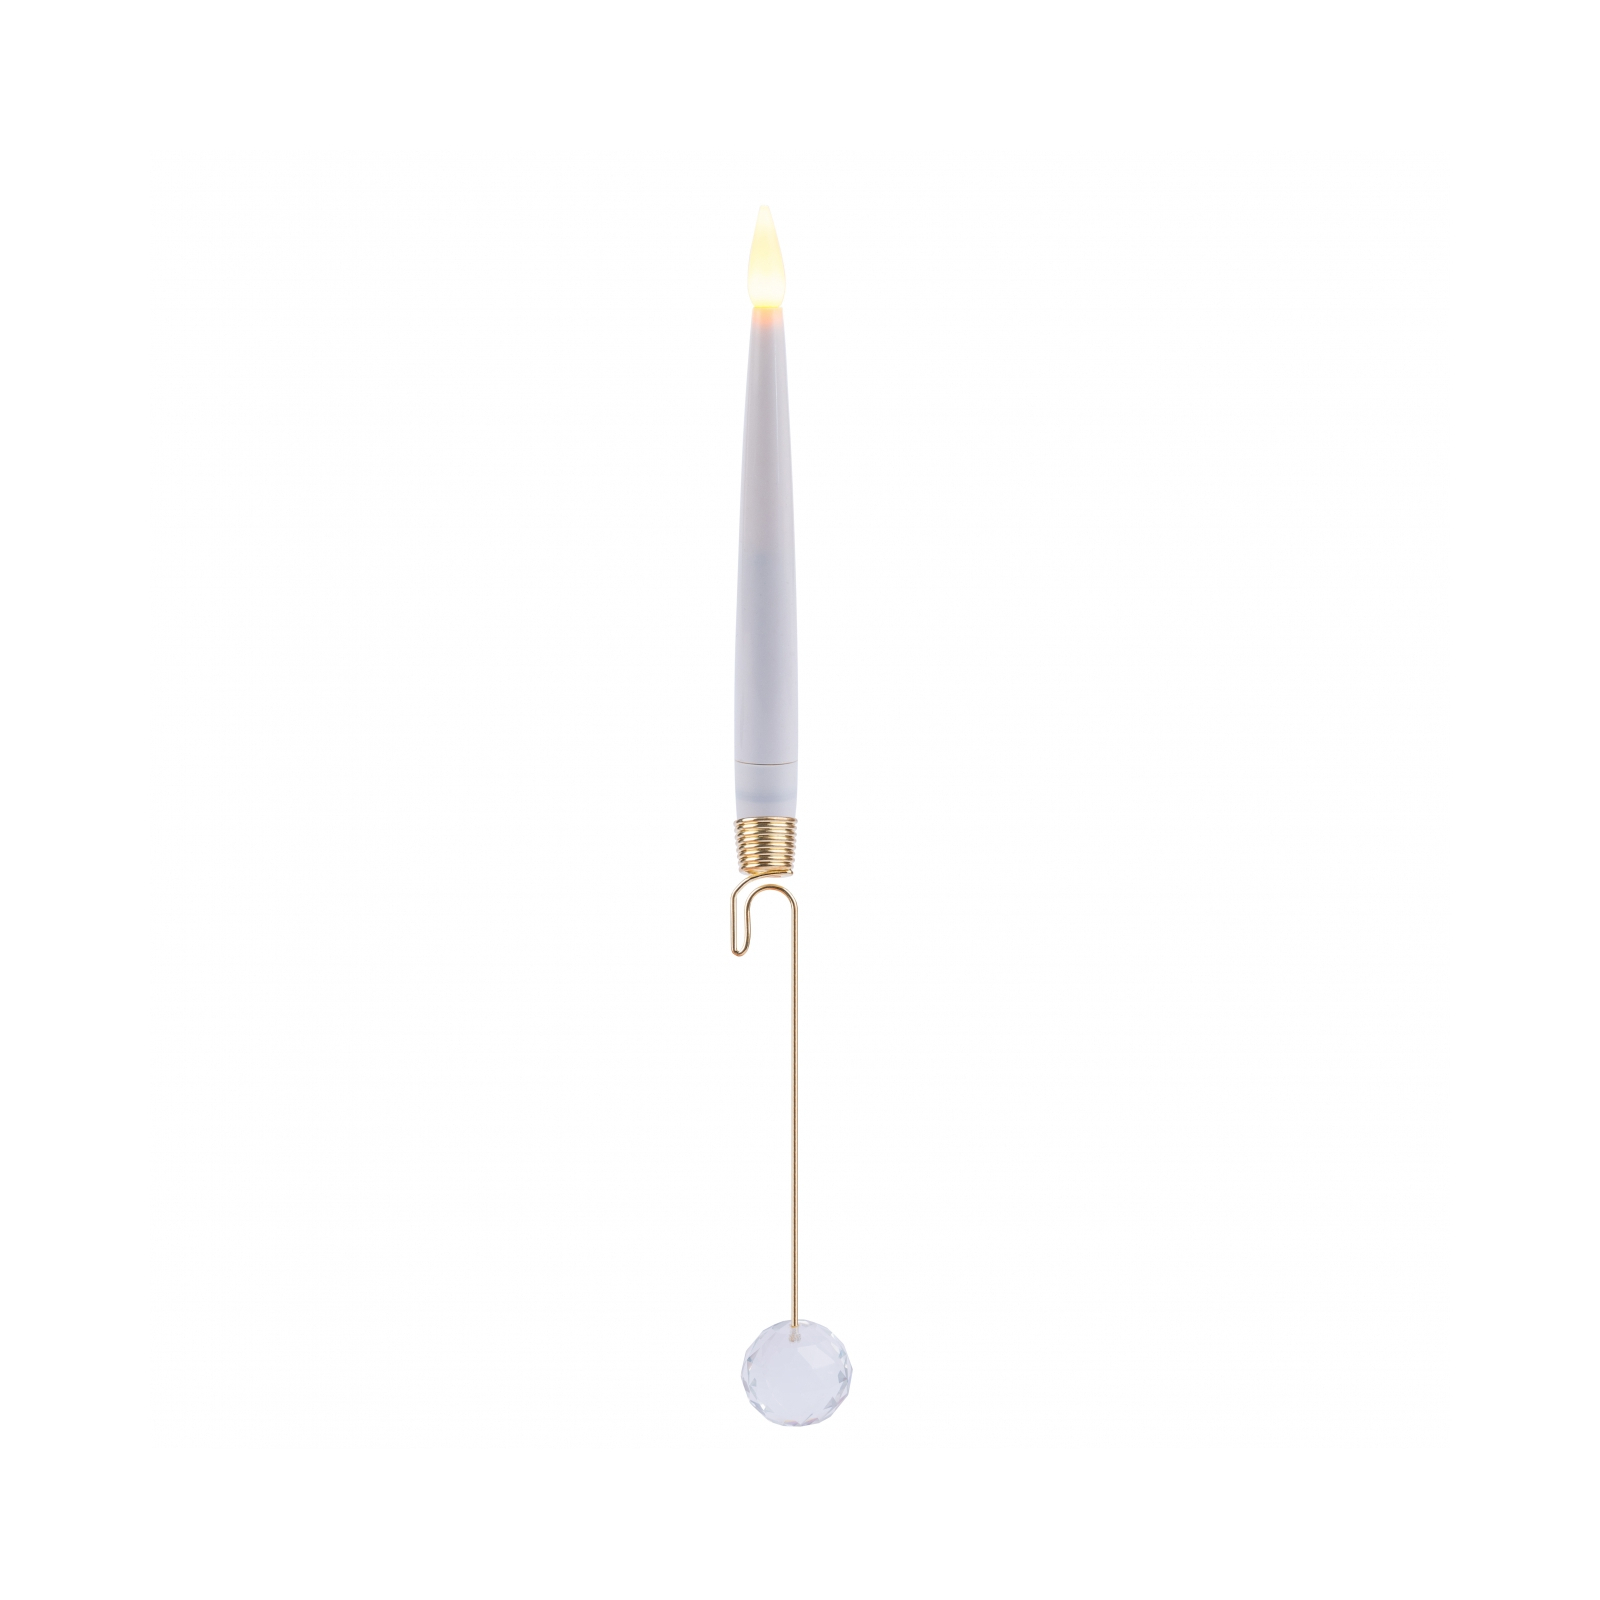 Елочная игрушка Novogod`ko набор свечей Antigravity LED, с кристаллом, с пультом, 32 см, 3 шт. (974445)